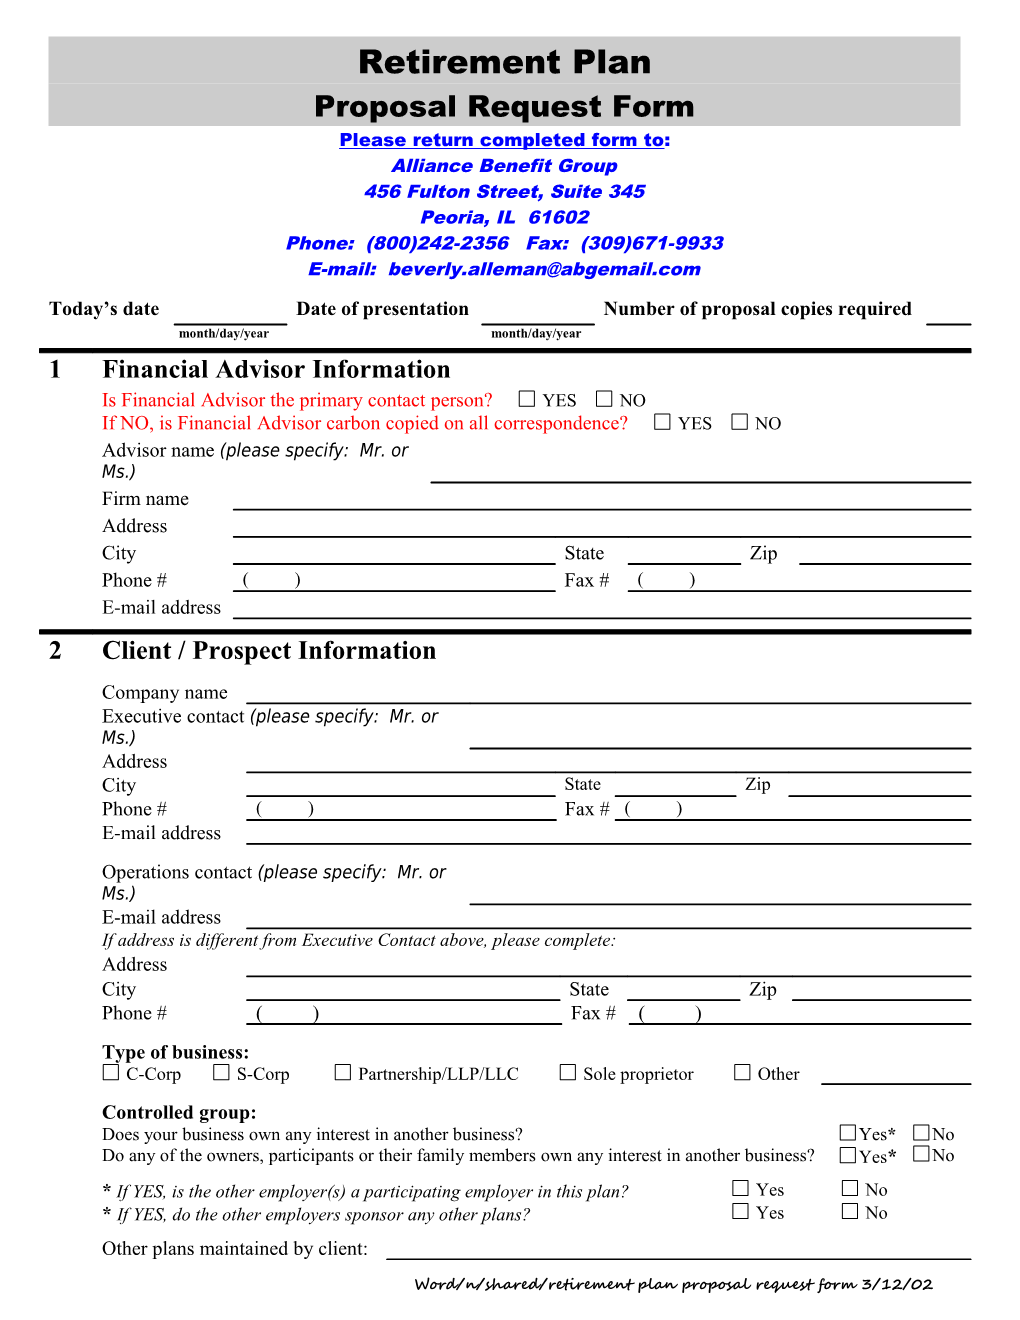 Retirement Plan Proposal Request Form